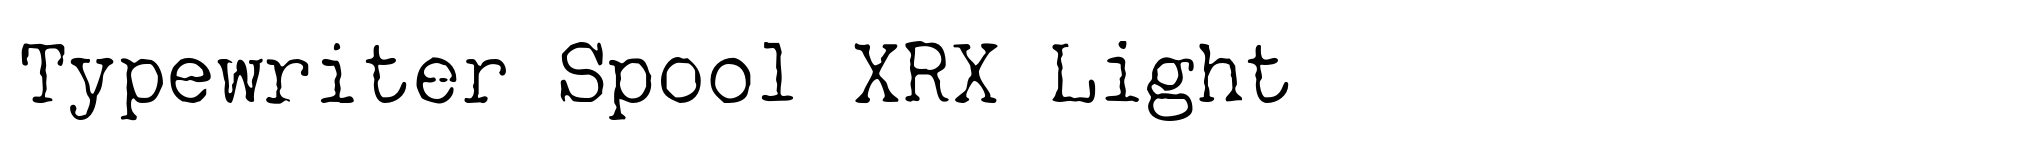 Typewriter Spool XRX Light image